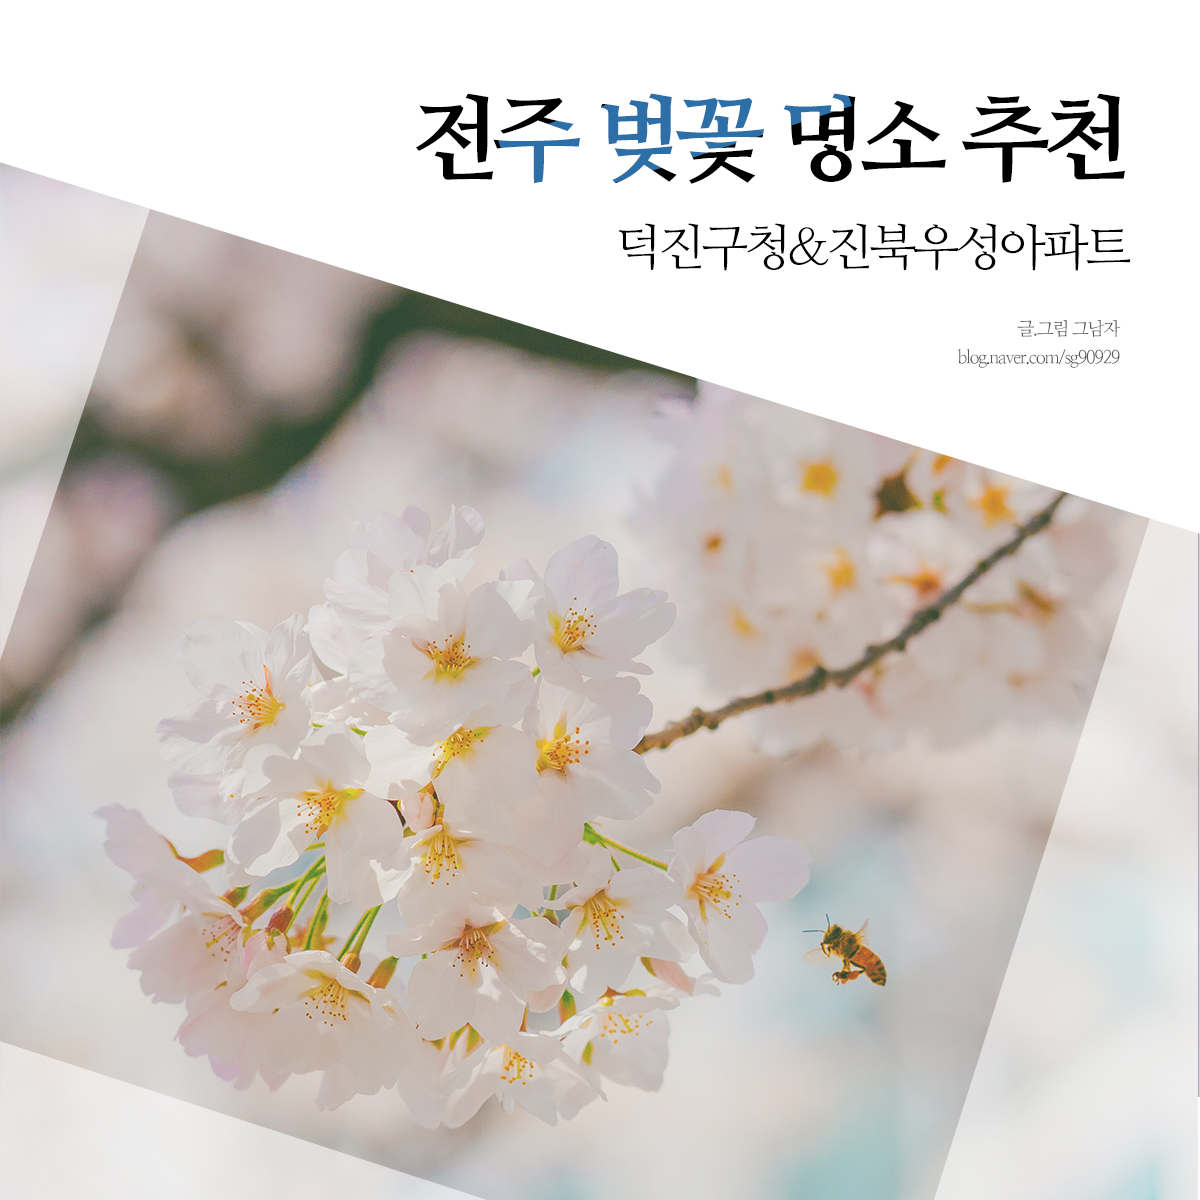 전주 벛꽃 명소 추천  : 덕진구청 & 진북 우성아파트(실시간)